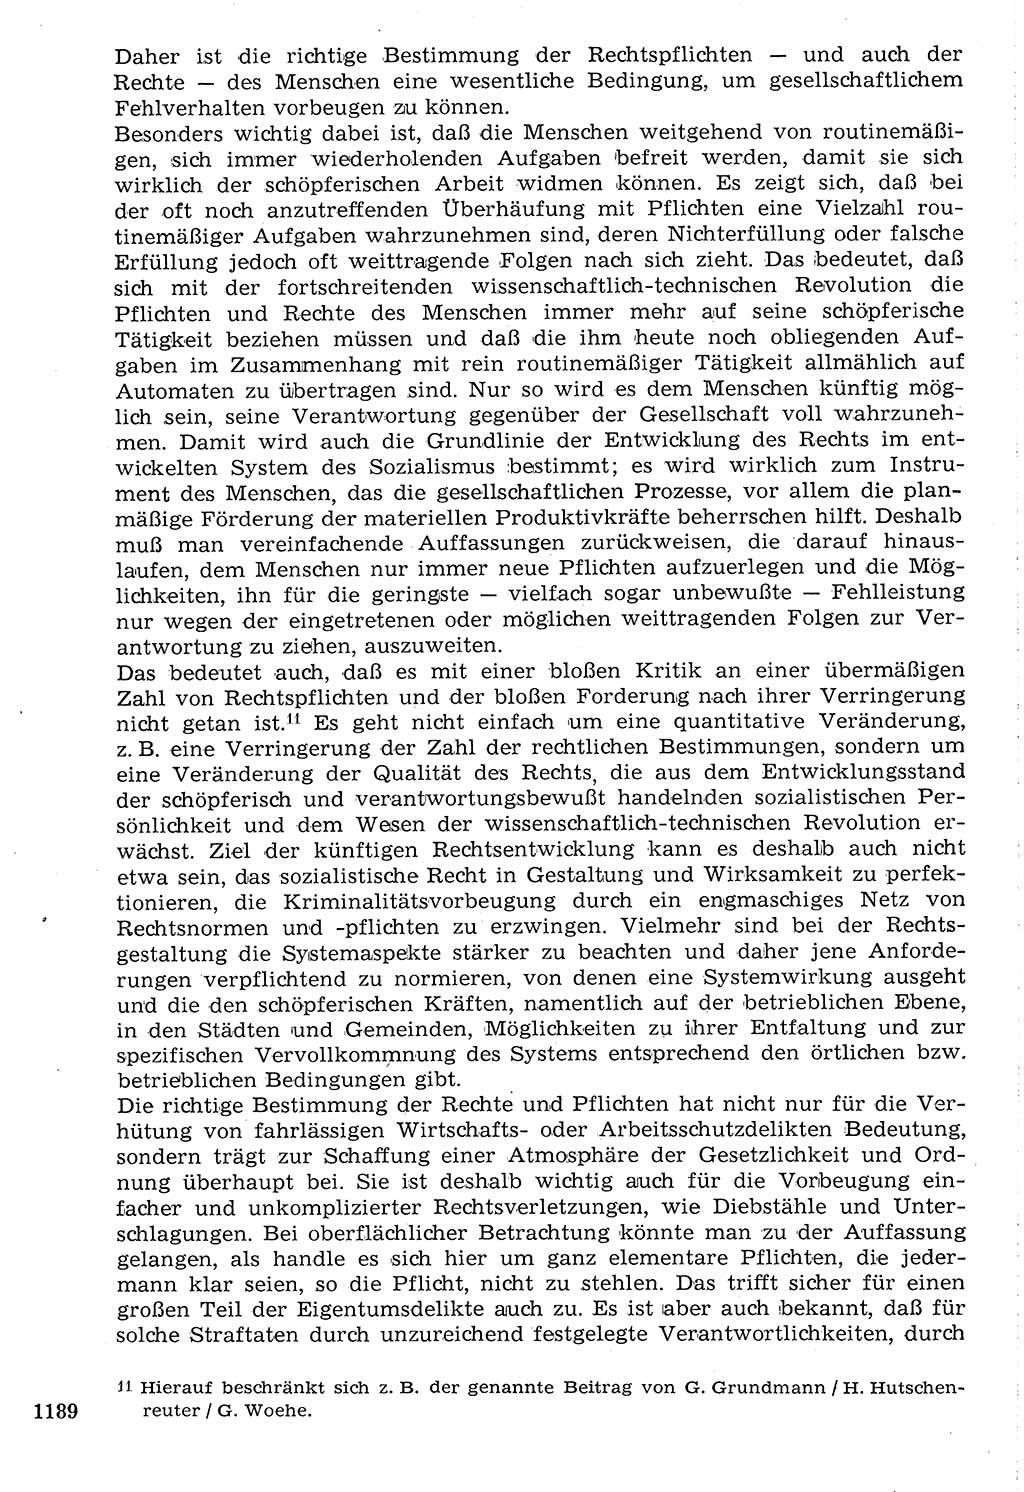 Staat und Recht (StuR), 17. Jahrgang [Deutsche Demokratische Republik (DDR)] 1968, Seite 1189 (StuR DDR 1968, S. 1189)